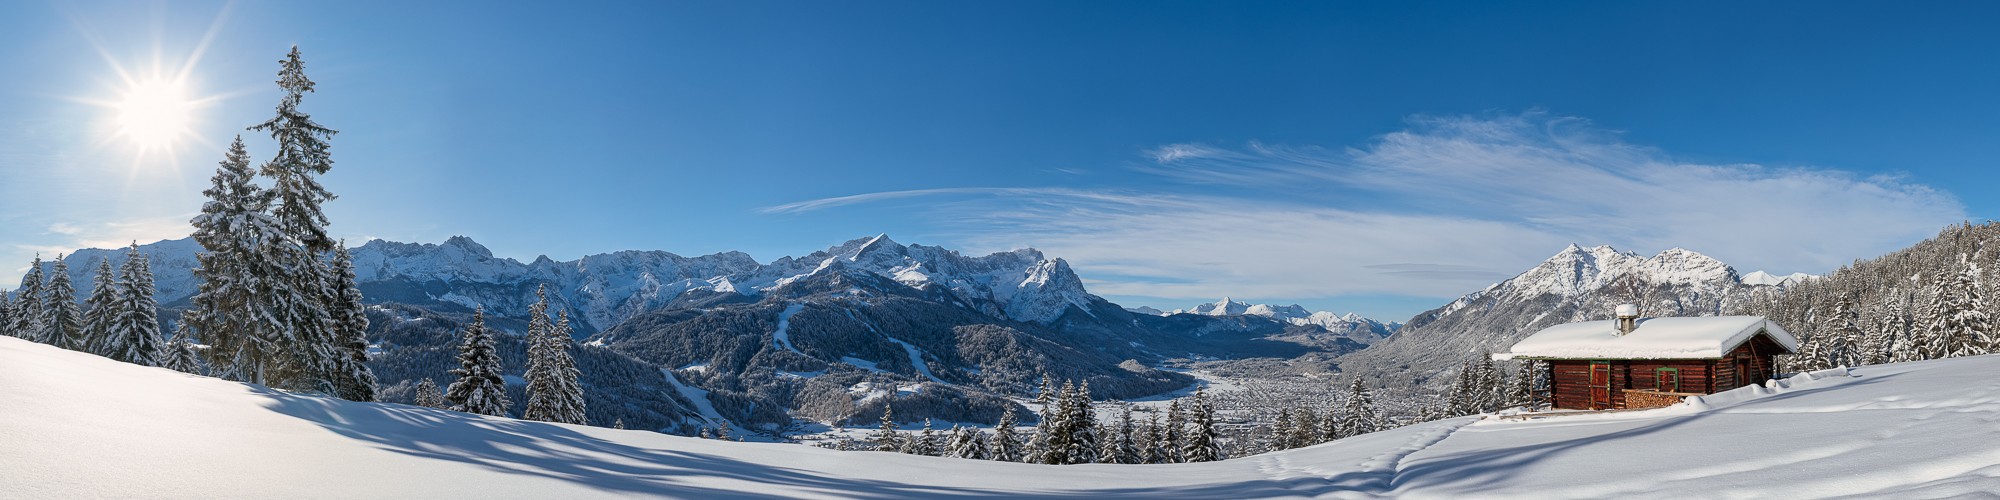 Neuschnee in Garmisch-Partenkirchen. Auf den Bäumen liegt noch der Pulverschnee, der im Sonnenlicht glitzert.